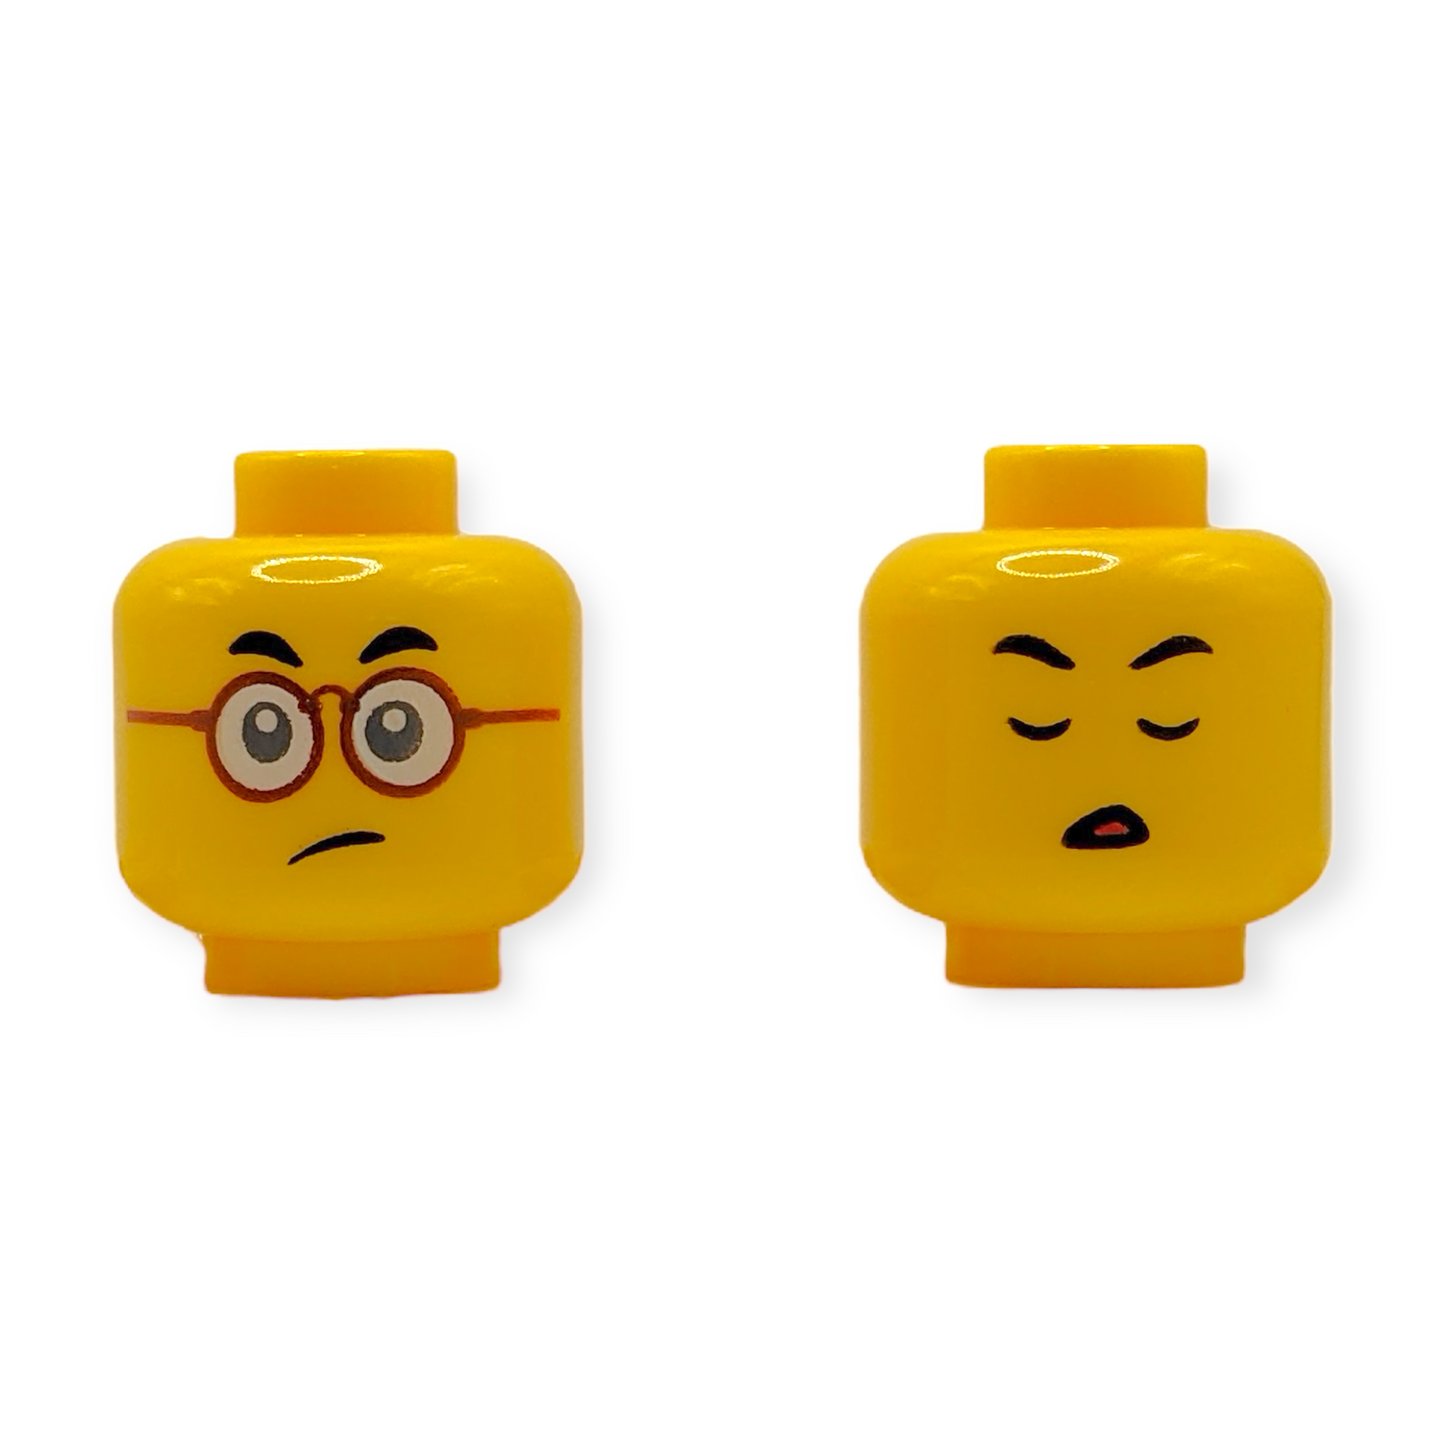 LEGO Head - 3907 Dual Sided Small Black Eyebrows